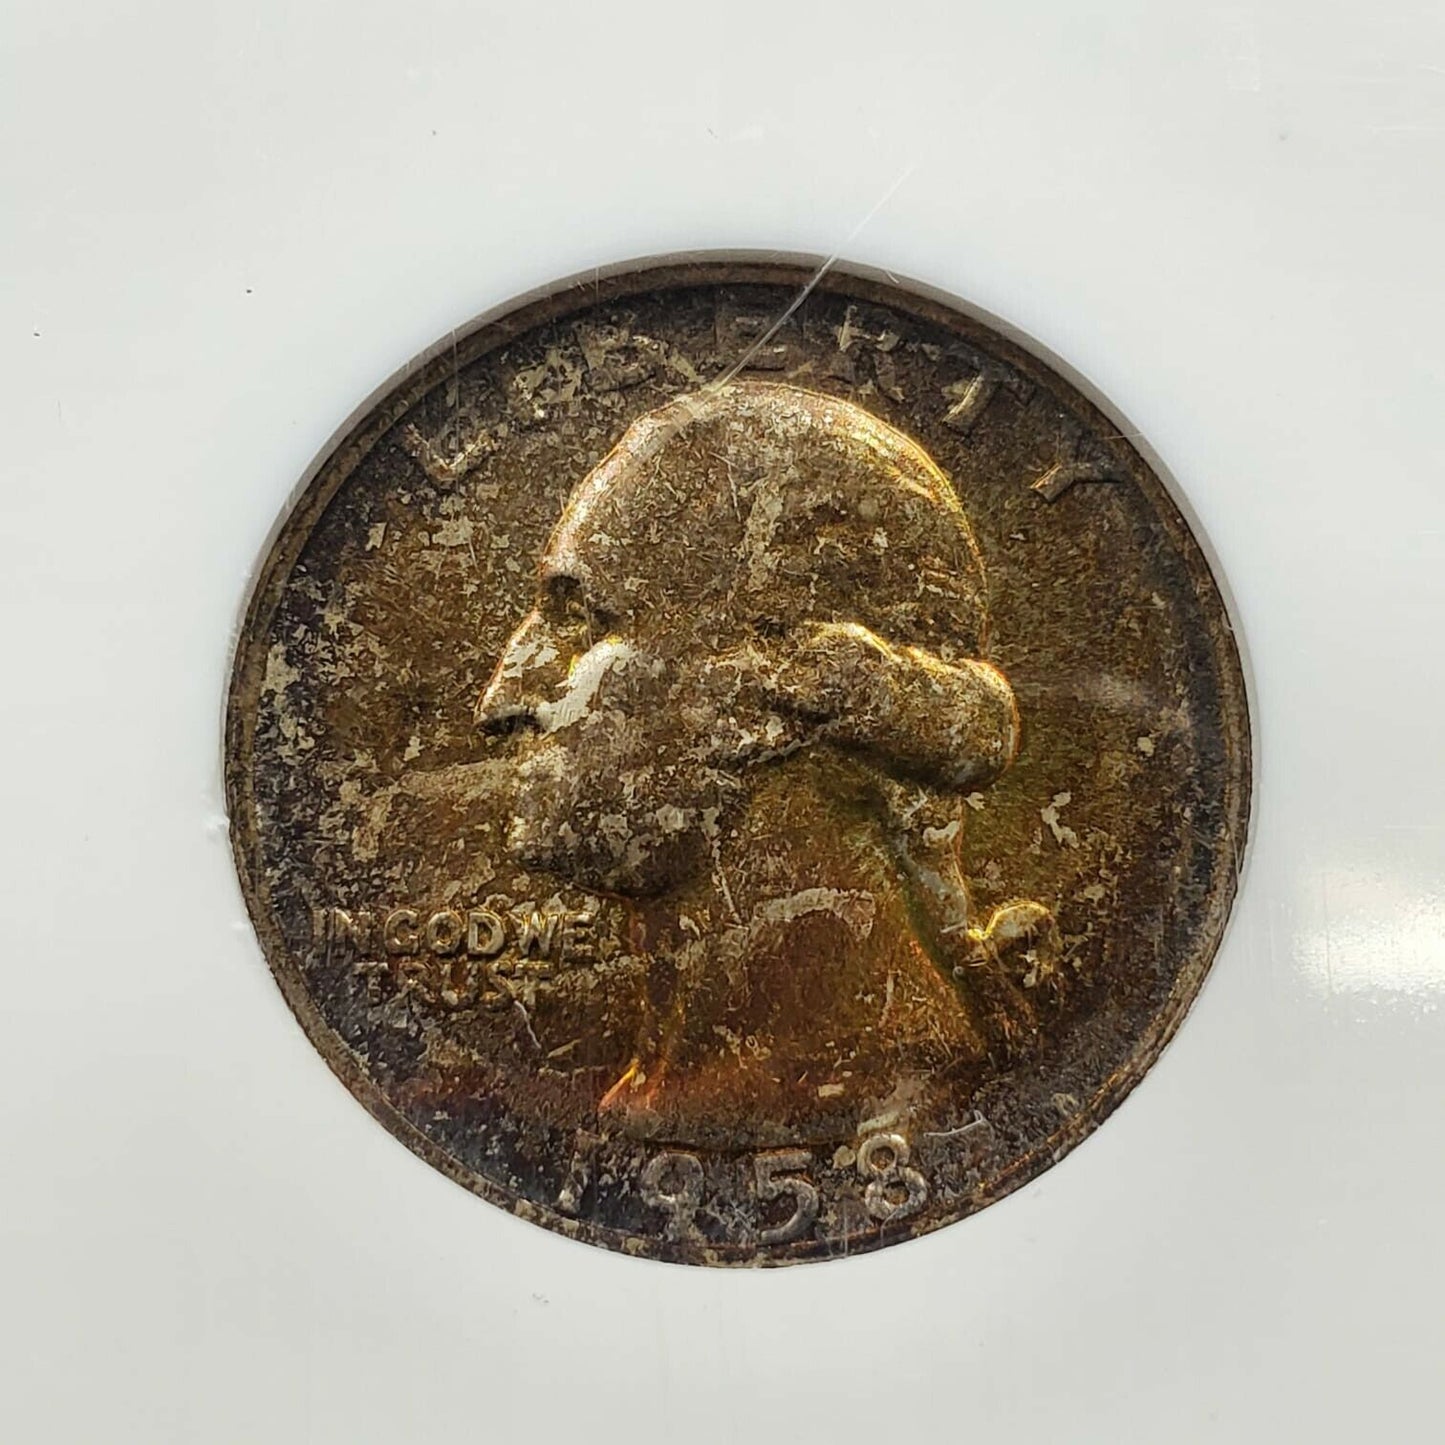 1958 D 25C Washington Quarter Coin NGC MS67 GEM BU PQ * Amber Toning Toner OBV